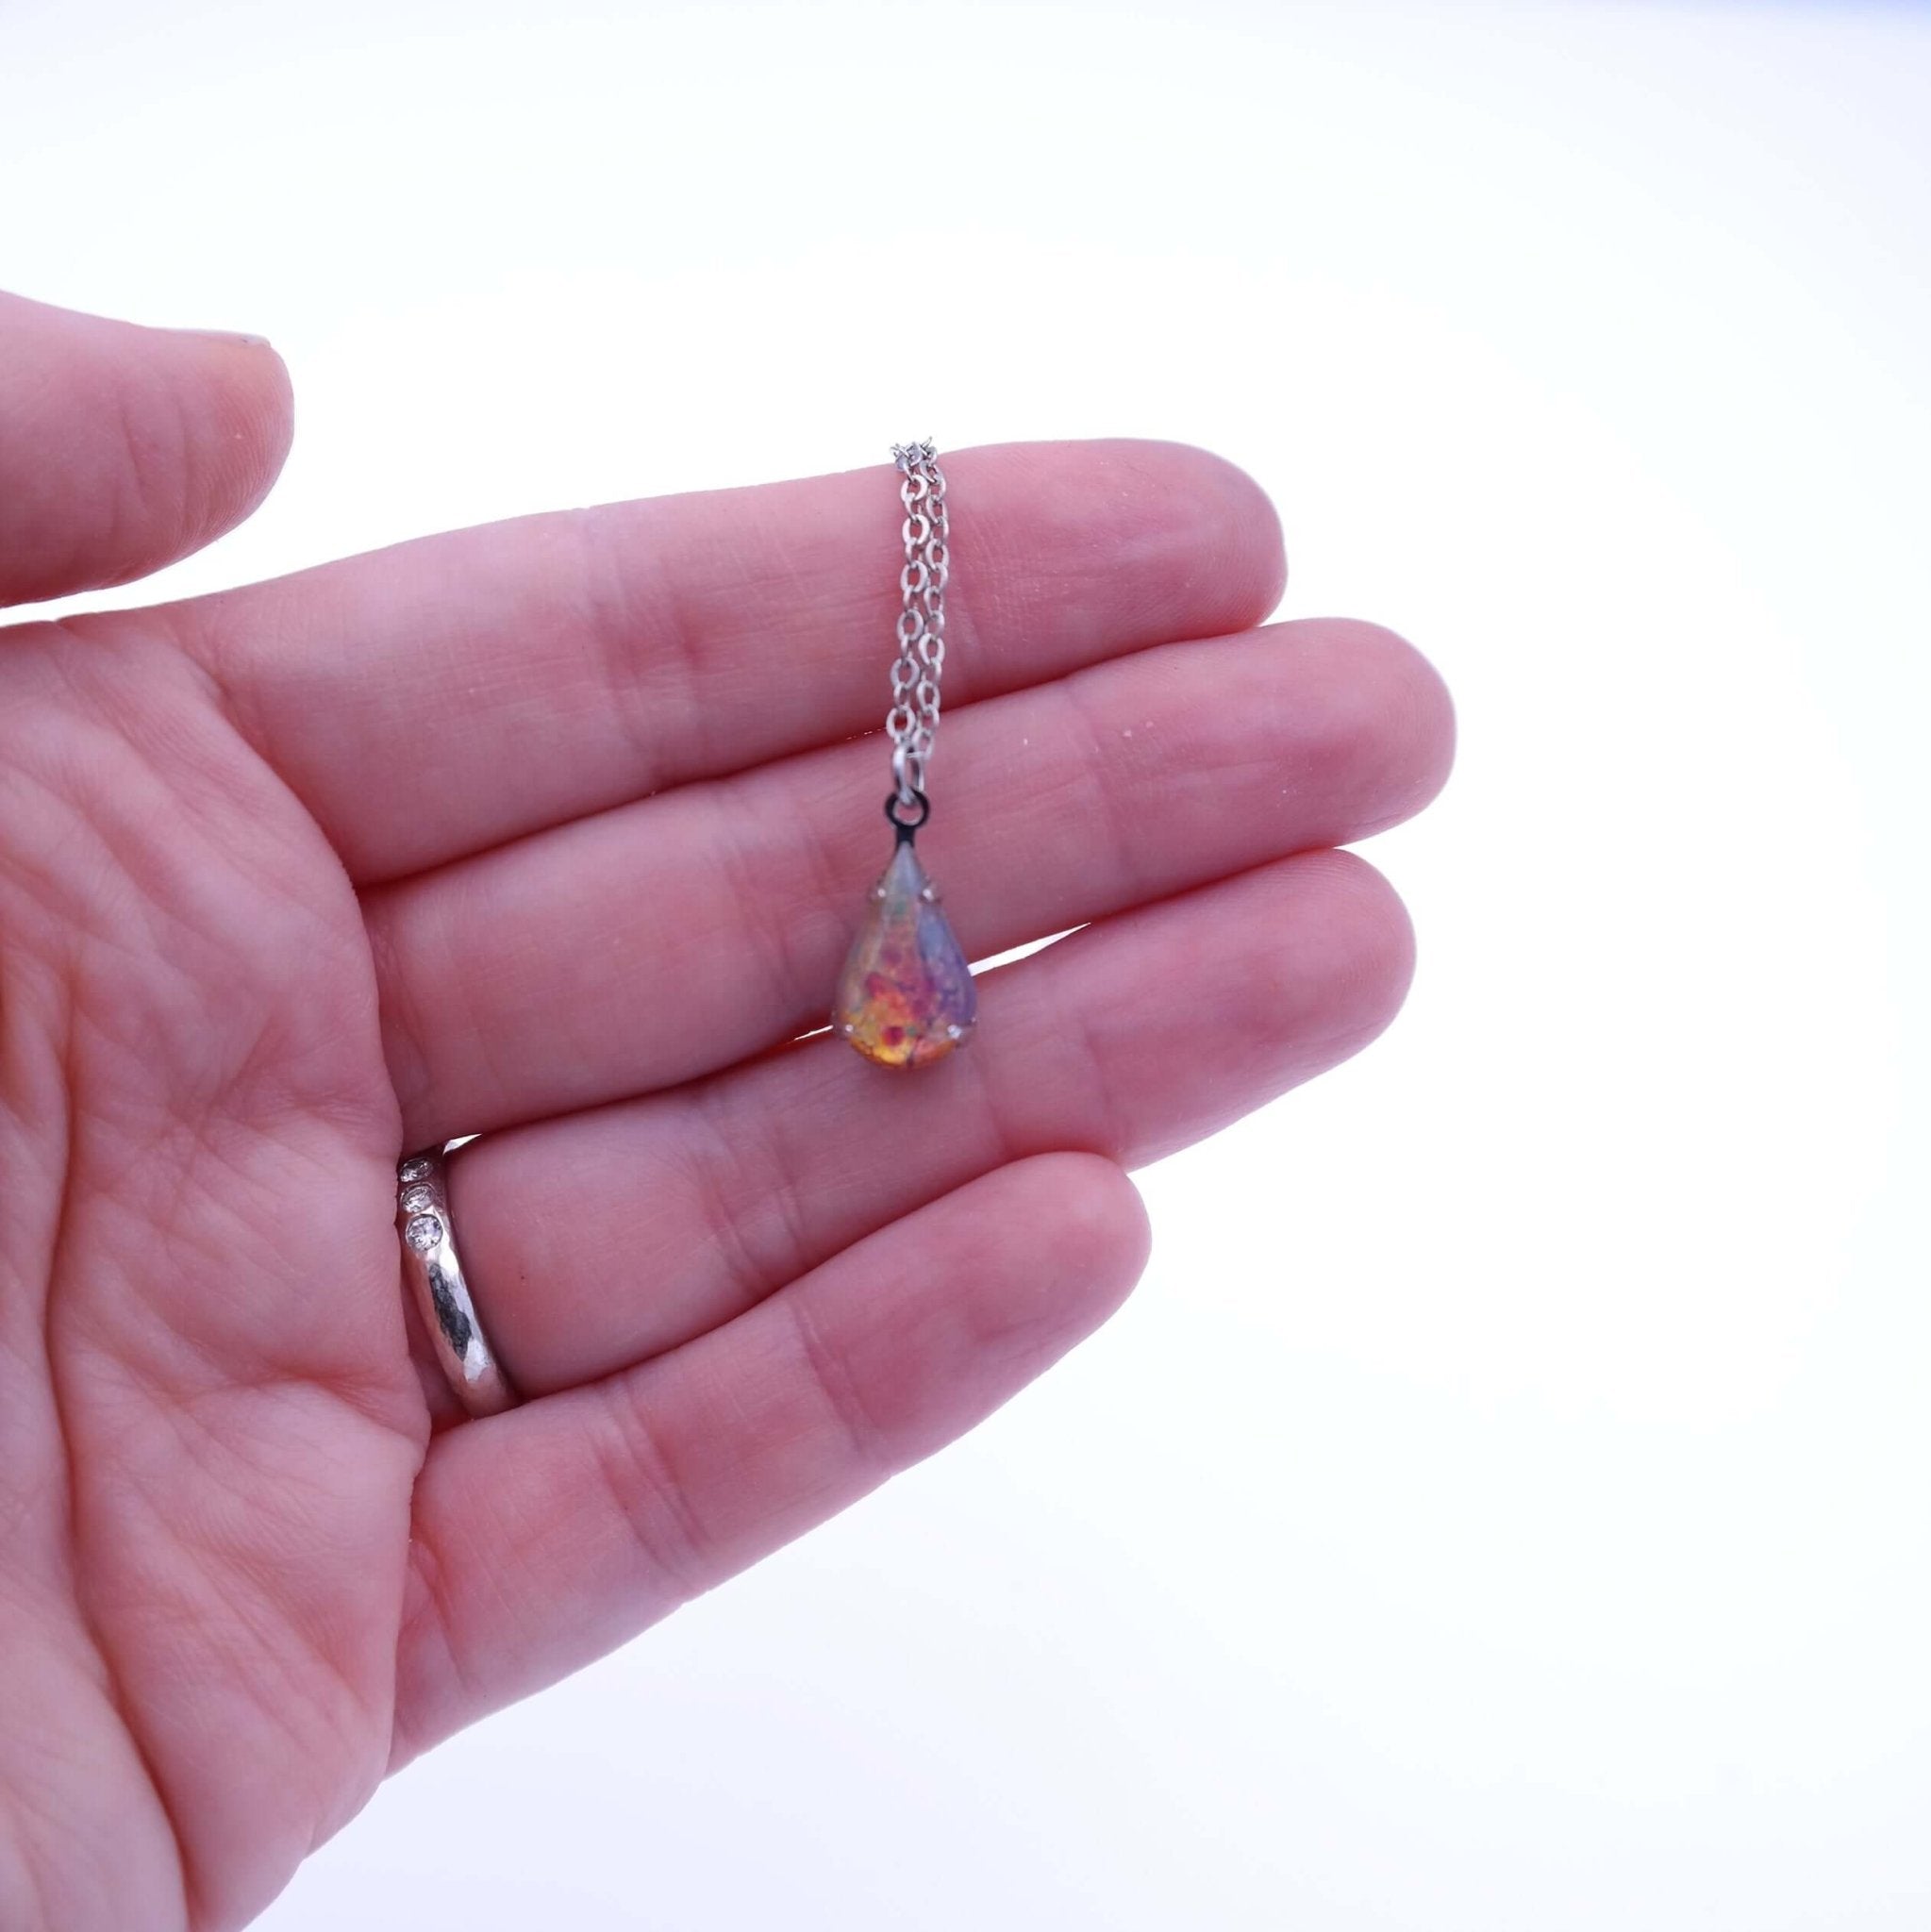 Fire Opal Necklace - Gypsy Soul Jewellery